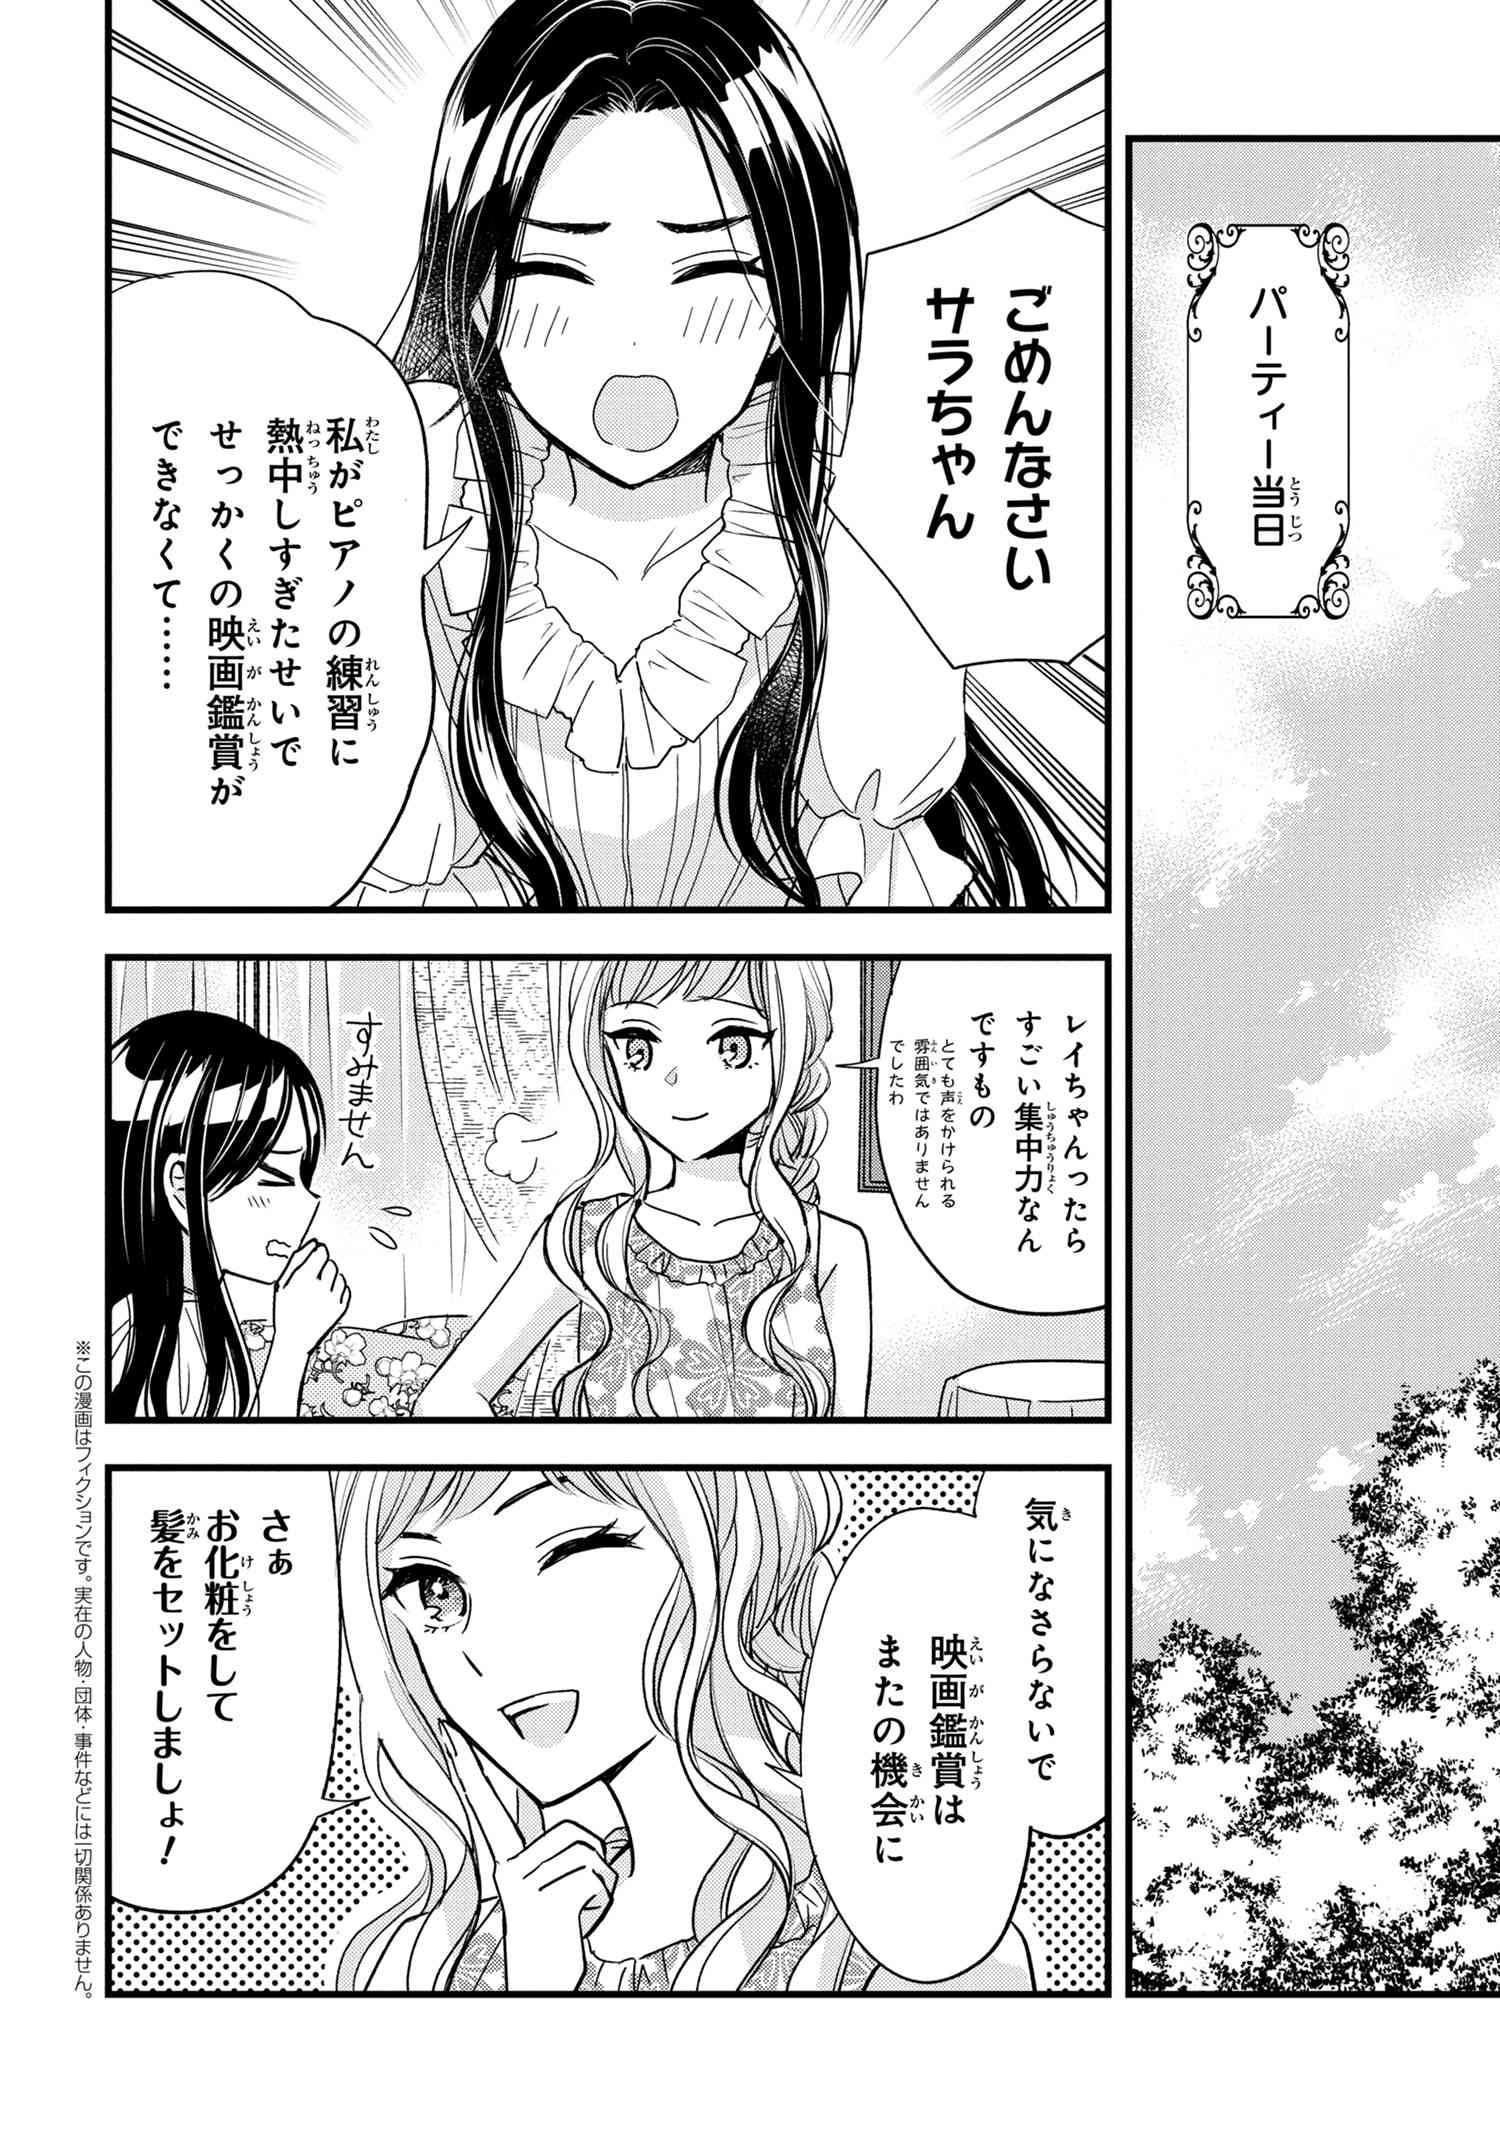 Reiko no Fuugi Akuyaku Reijou to Yobarete imasu ga, tada no Binbou Musume desu - Chapter 13-5 - Page 1